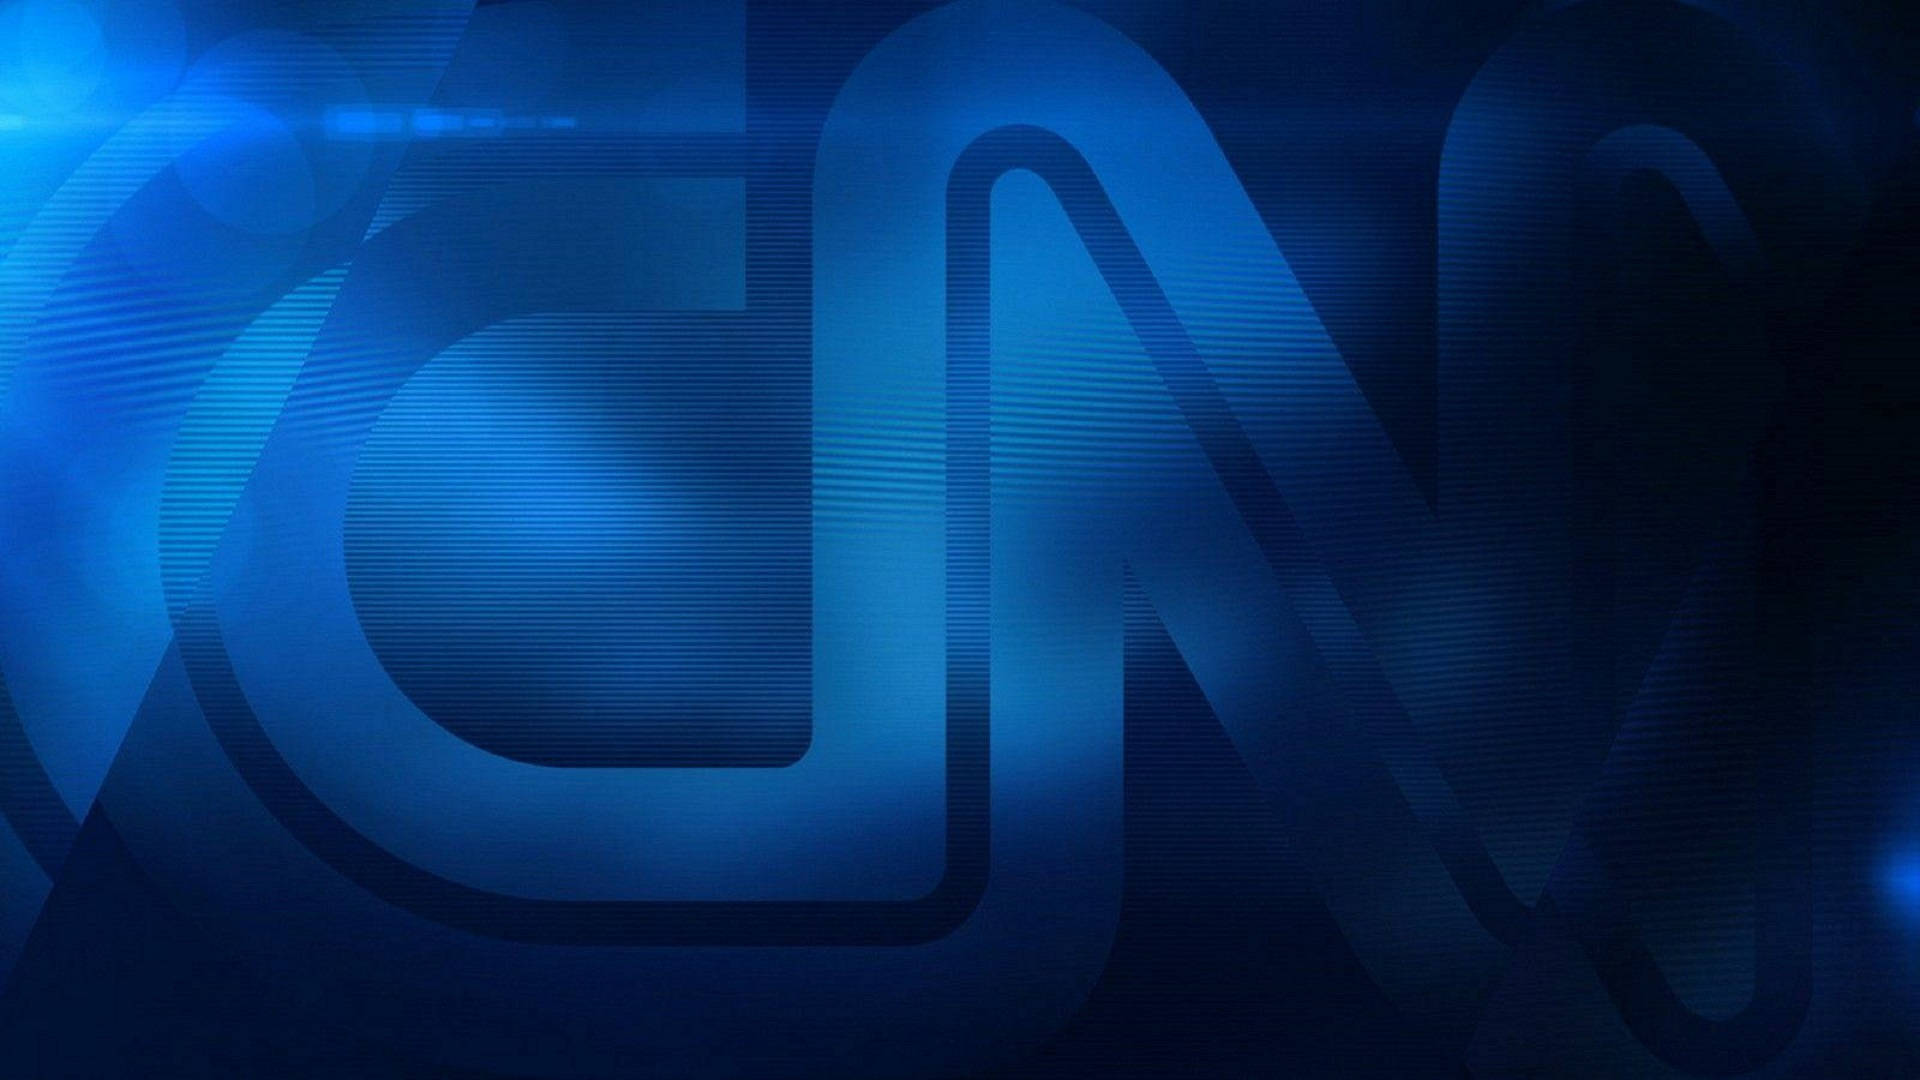 CNN Blue Live Wallpaper